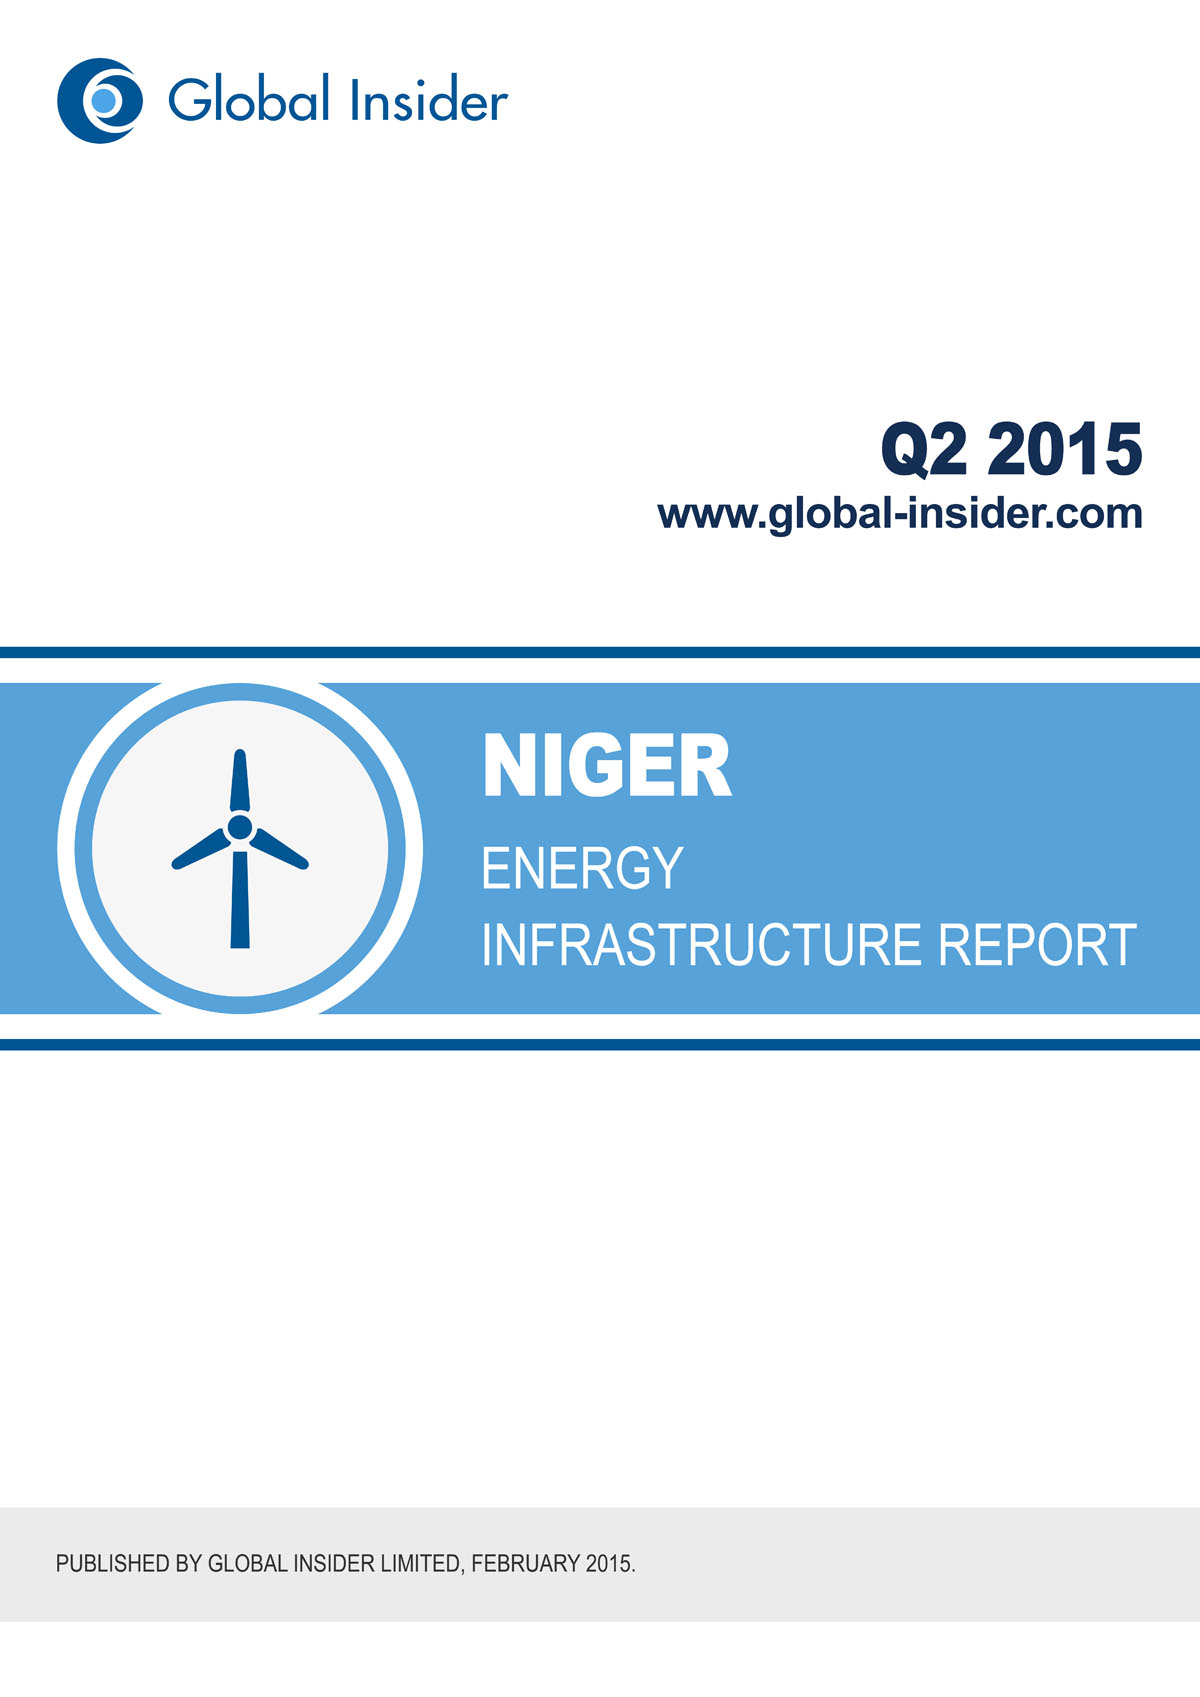 Niger Energy Infrastructure Report